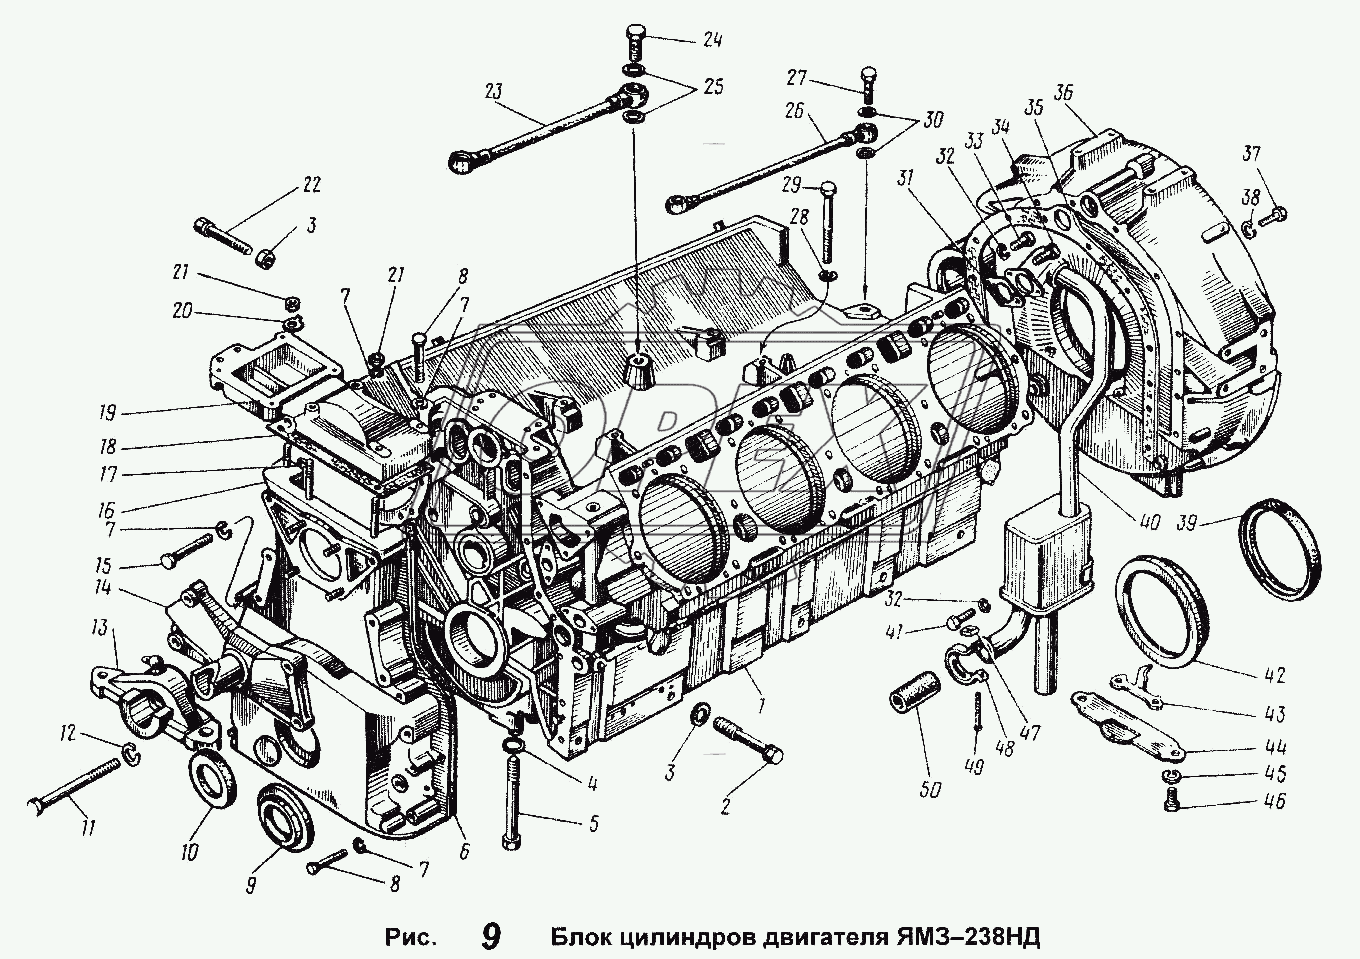 Блок цилиндров двигателя ЯМЗ-238НД